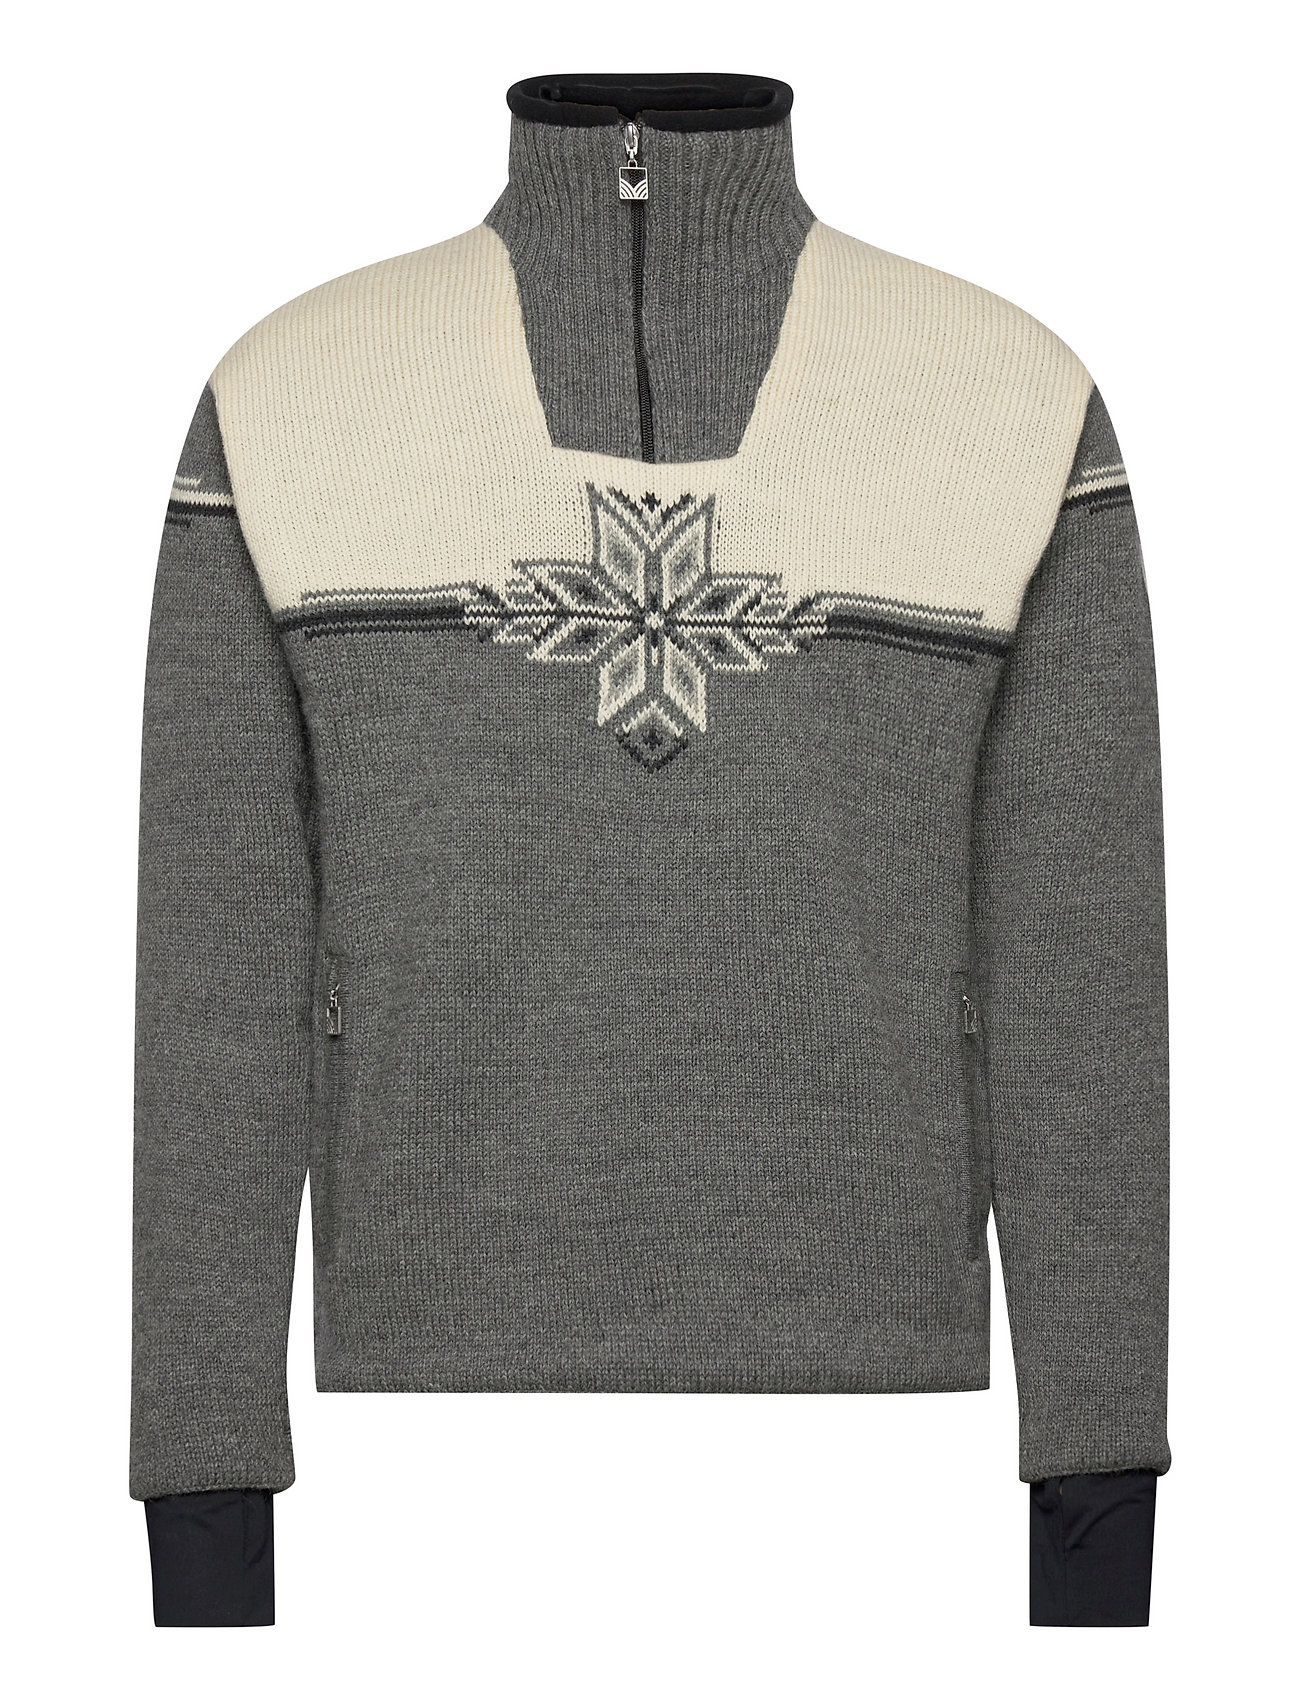 Veskre Wp Sweater Masculine Knitwear Half Zip Pullover Grå Dale Of Norway